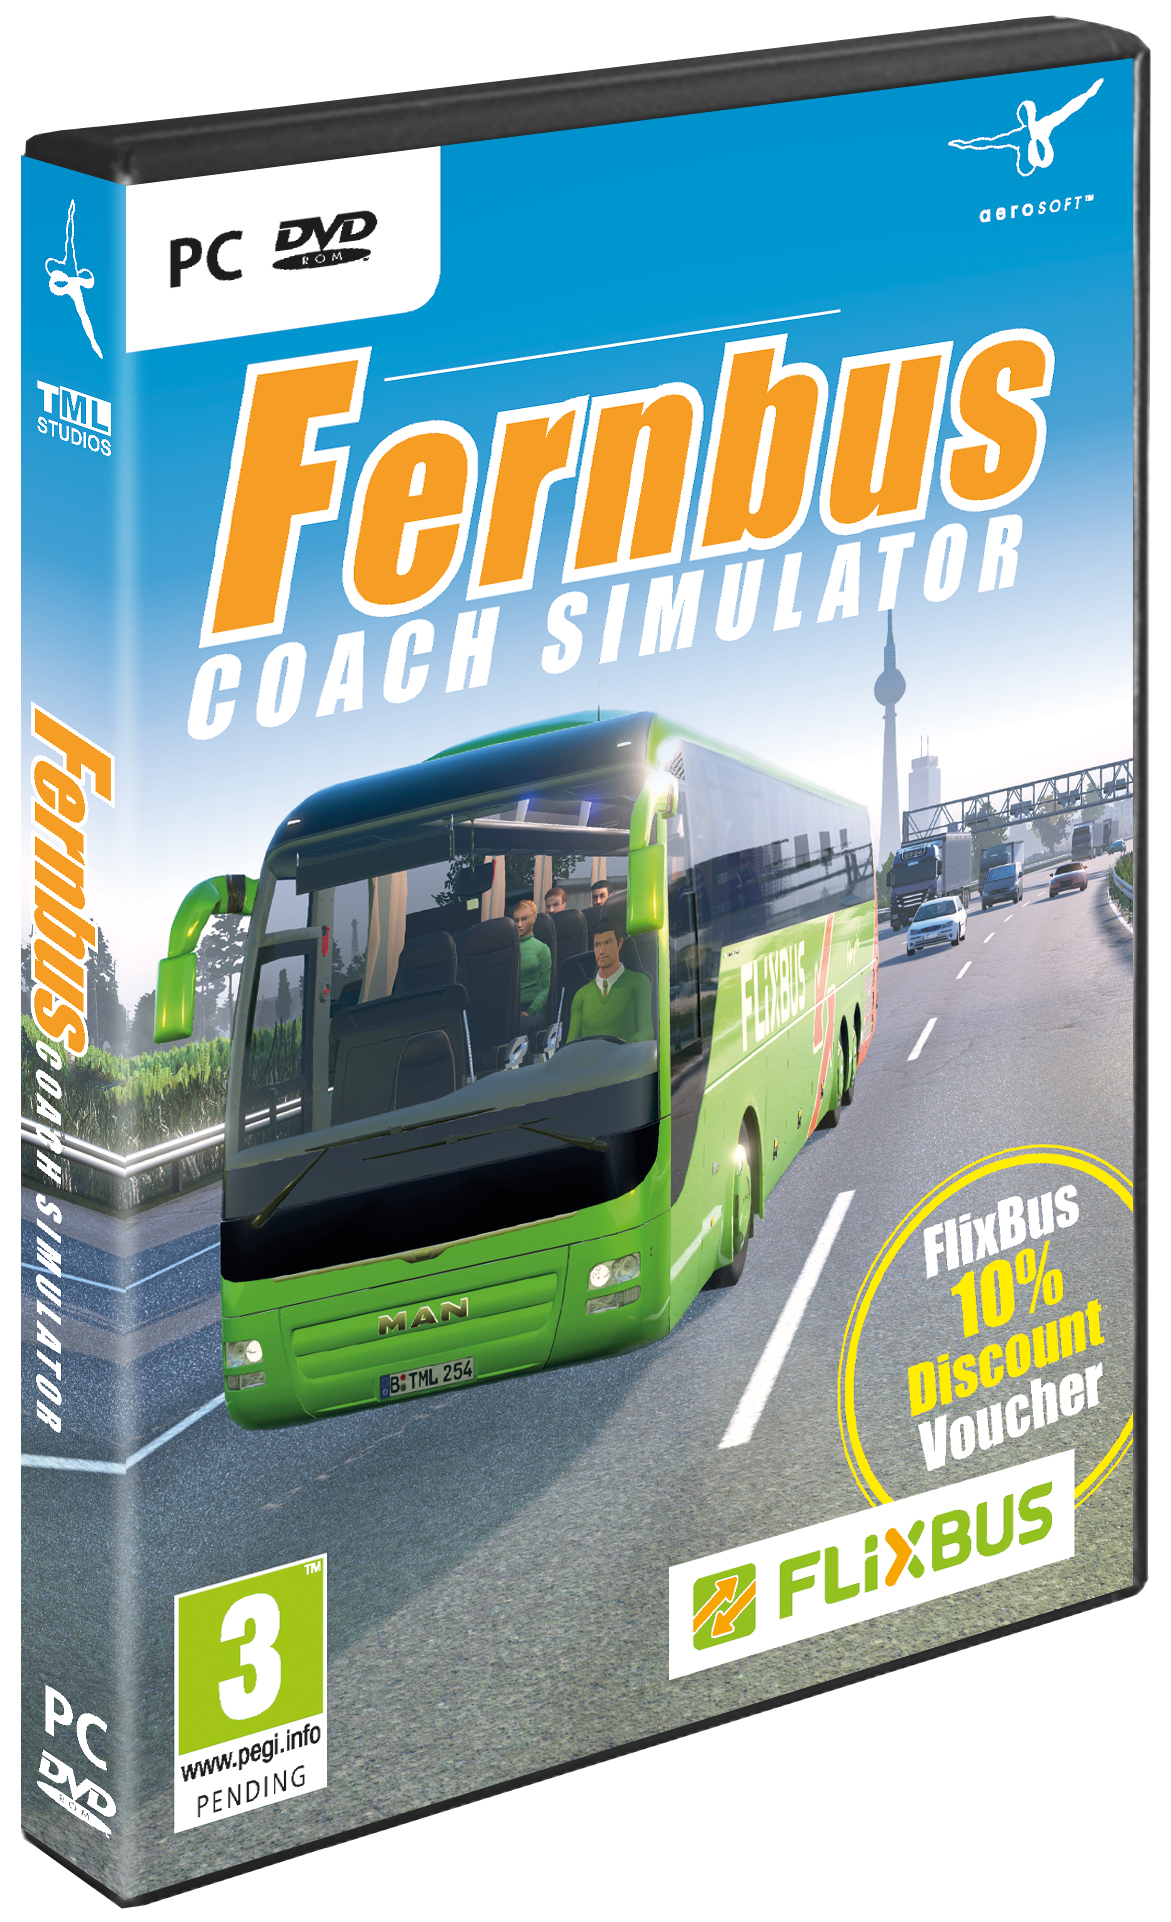 fernbus coach simulator torrent